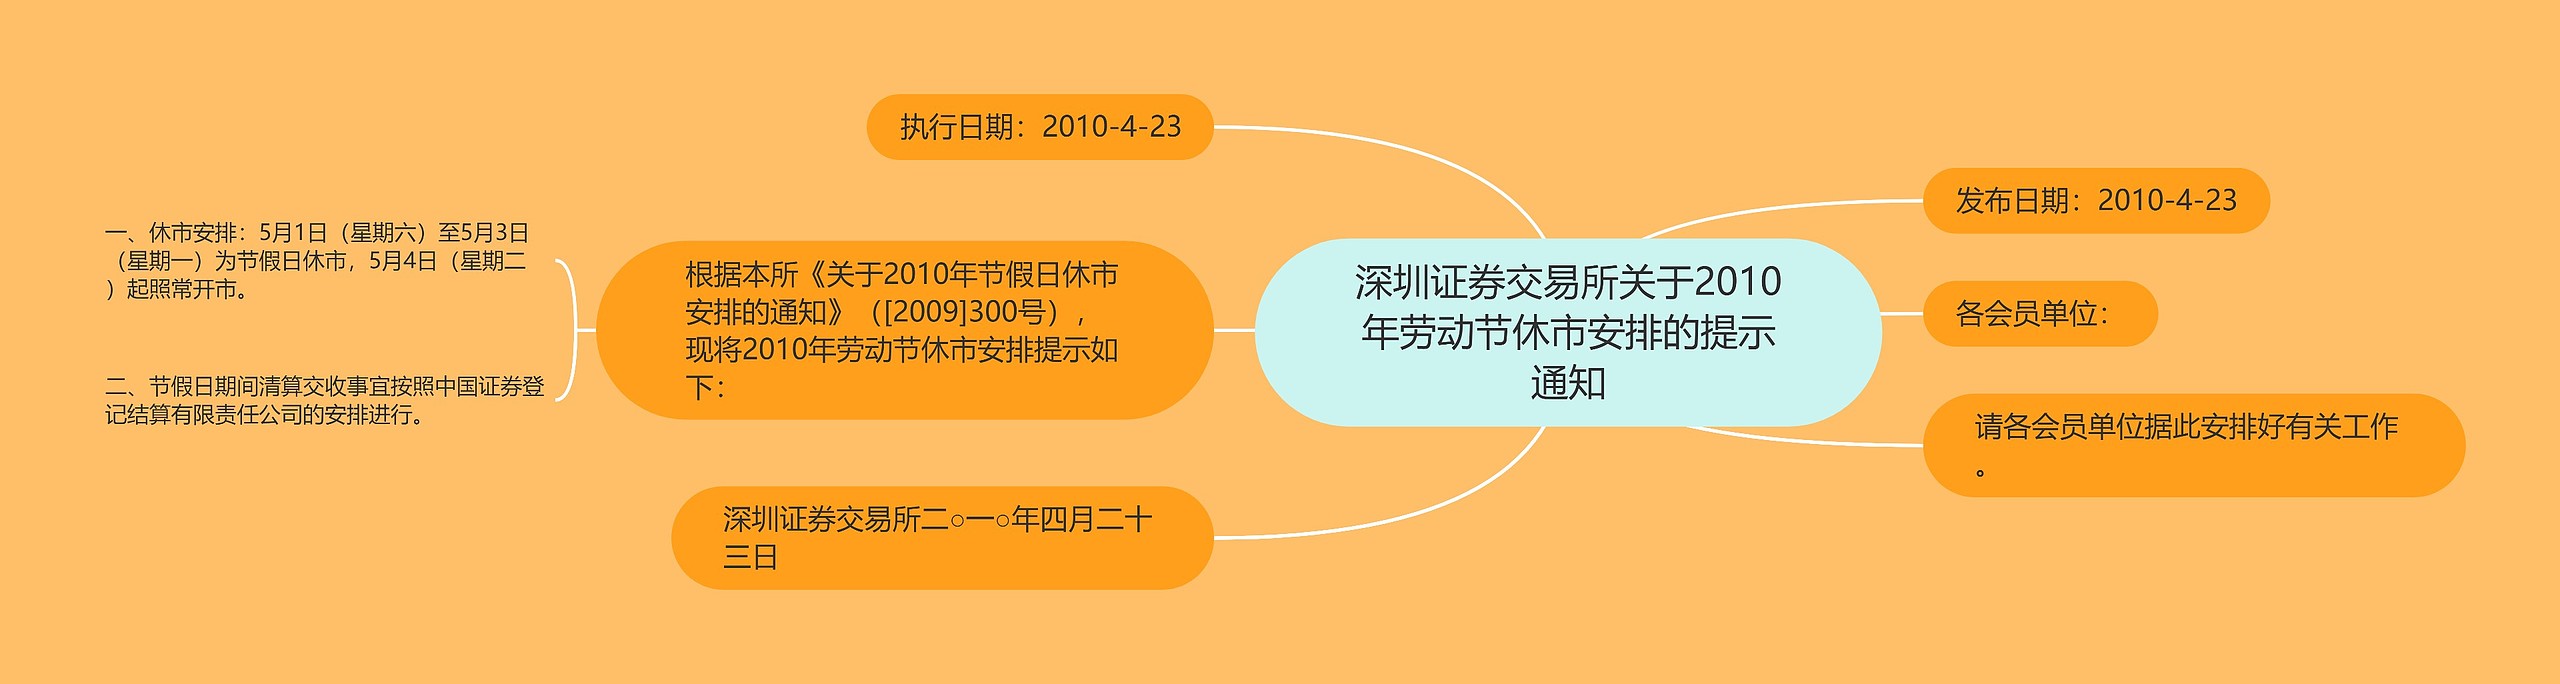 深圳证券交易所关于2010年劳动节休市安排的提示通知